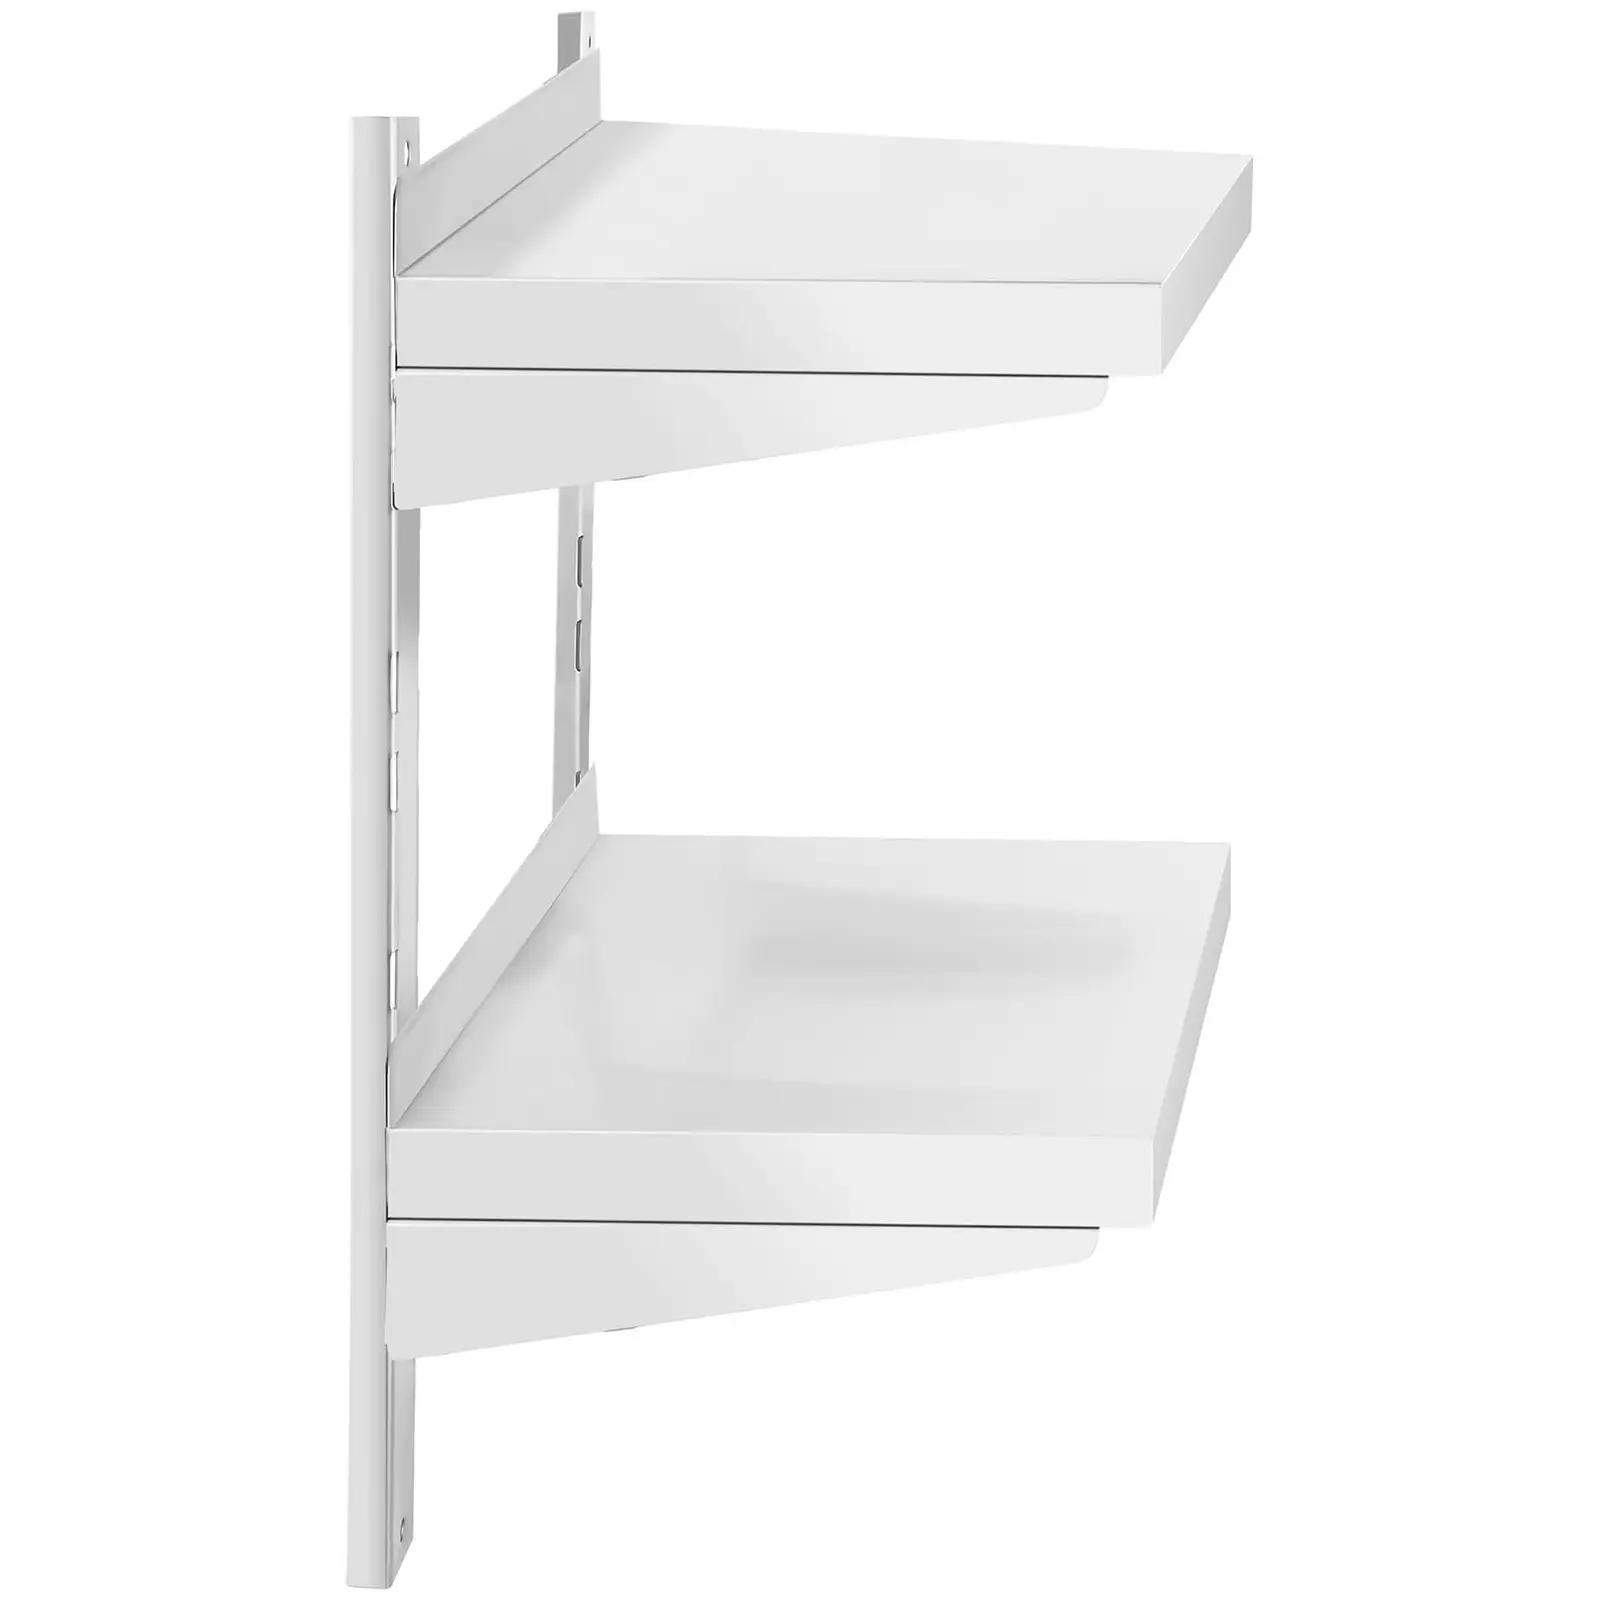 Stainless Steel Wall Shelf - 2 shelves - 30 x 60 cm